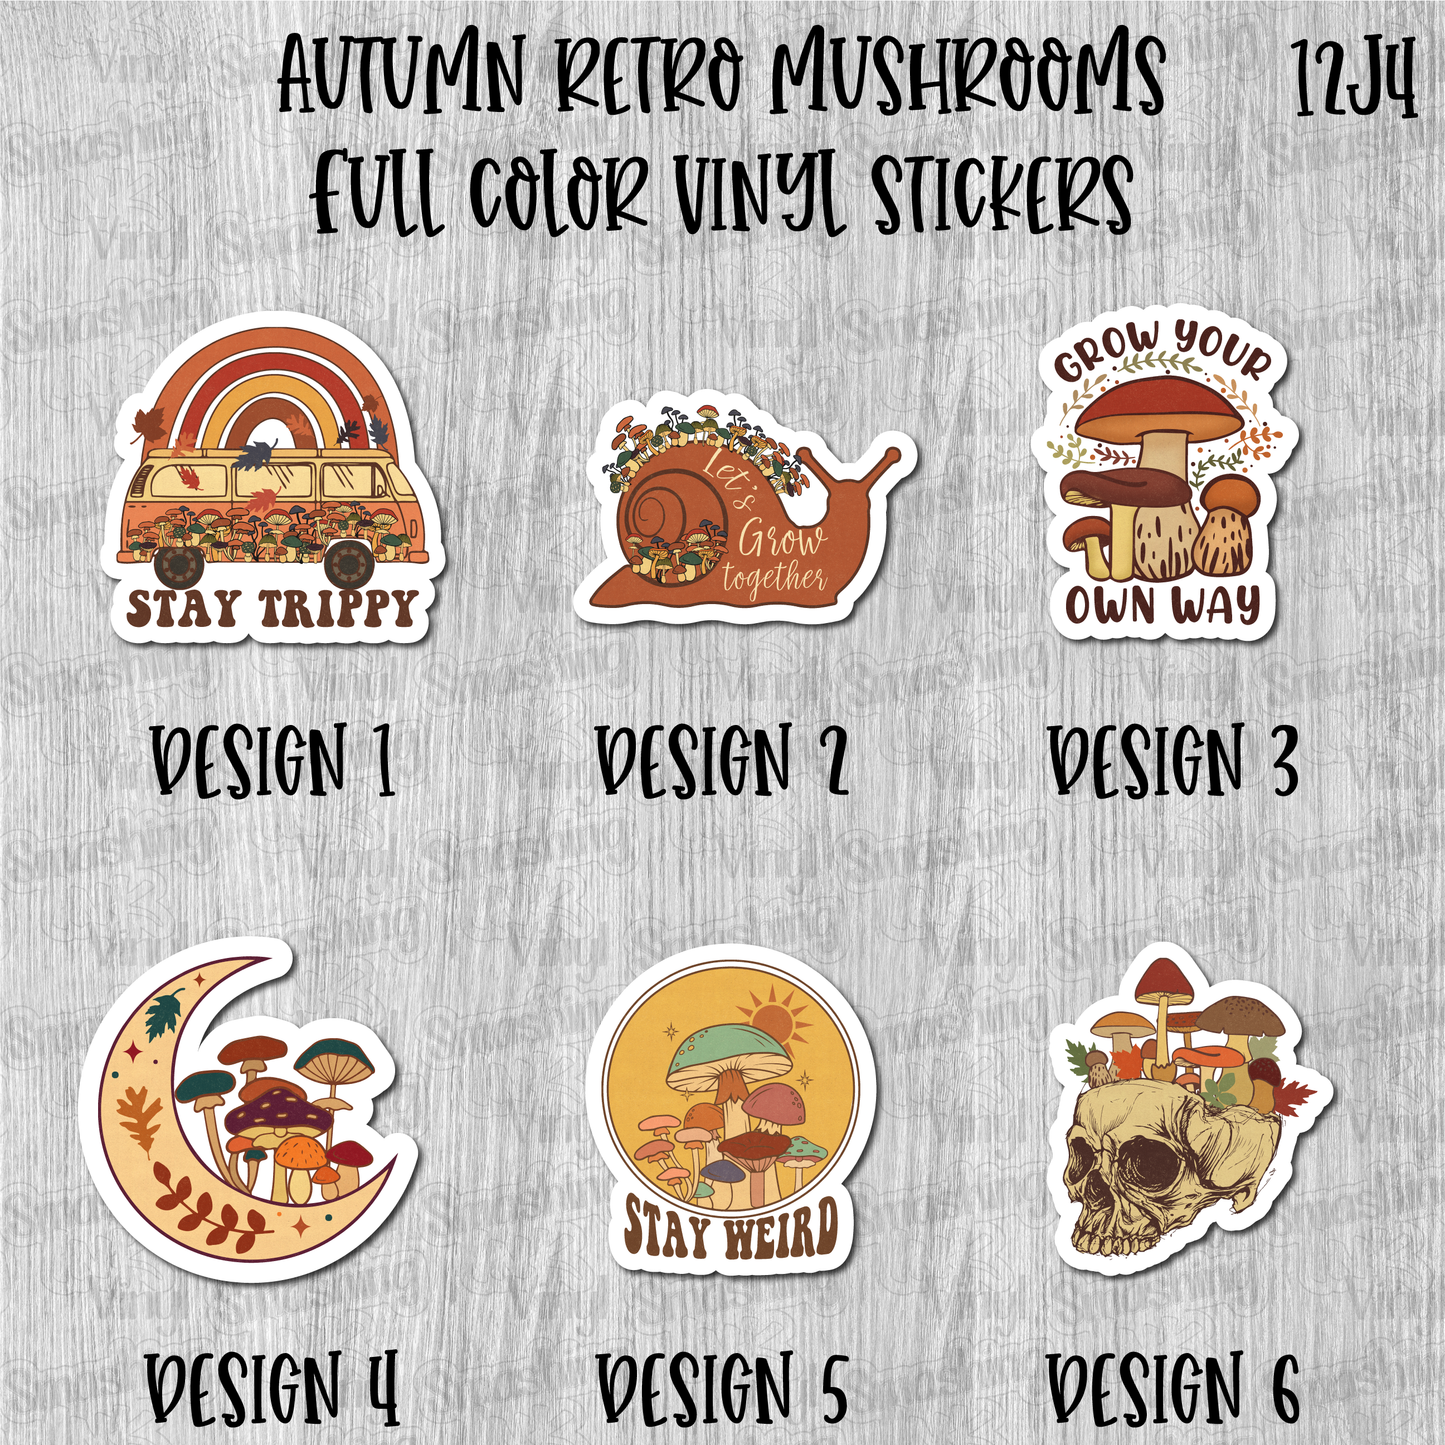 Autumn Retro Mushrooms - Full Color Vinyl Stickers (SHIPS IN 3-7 BUS DAYS)